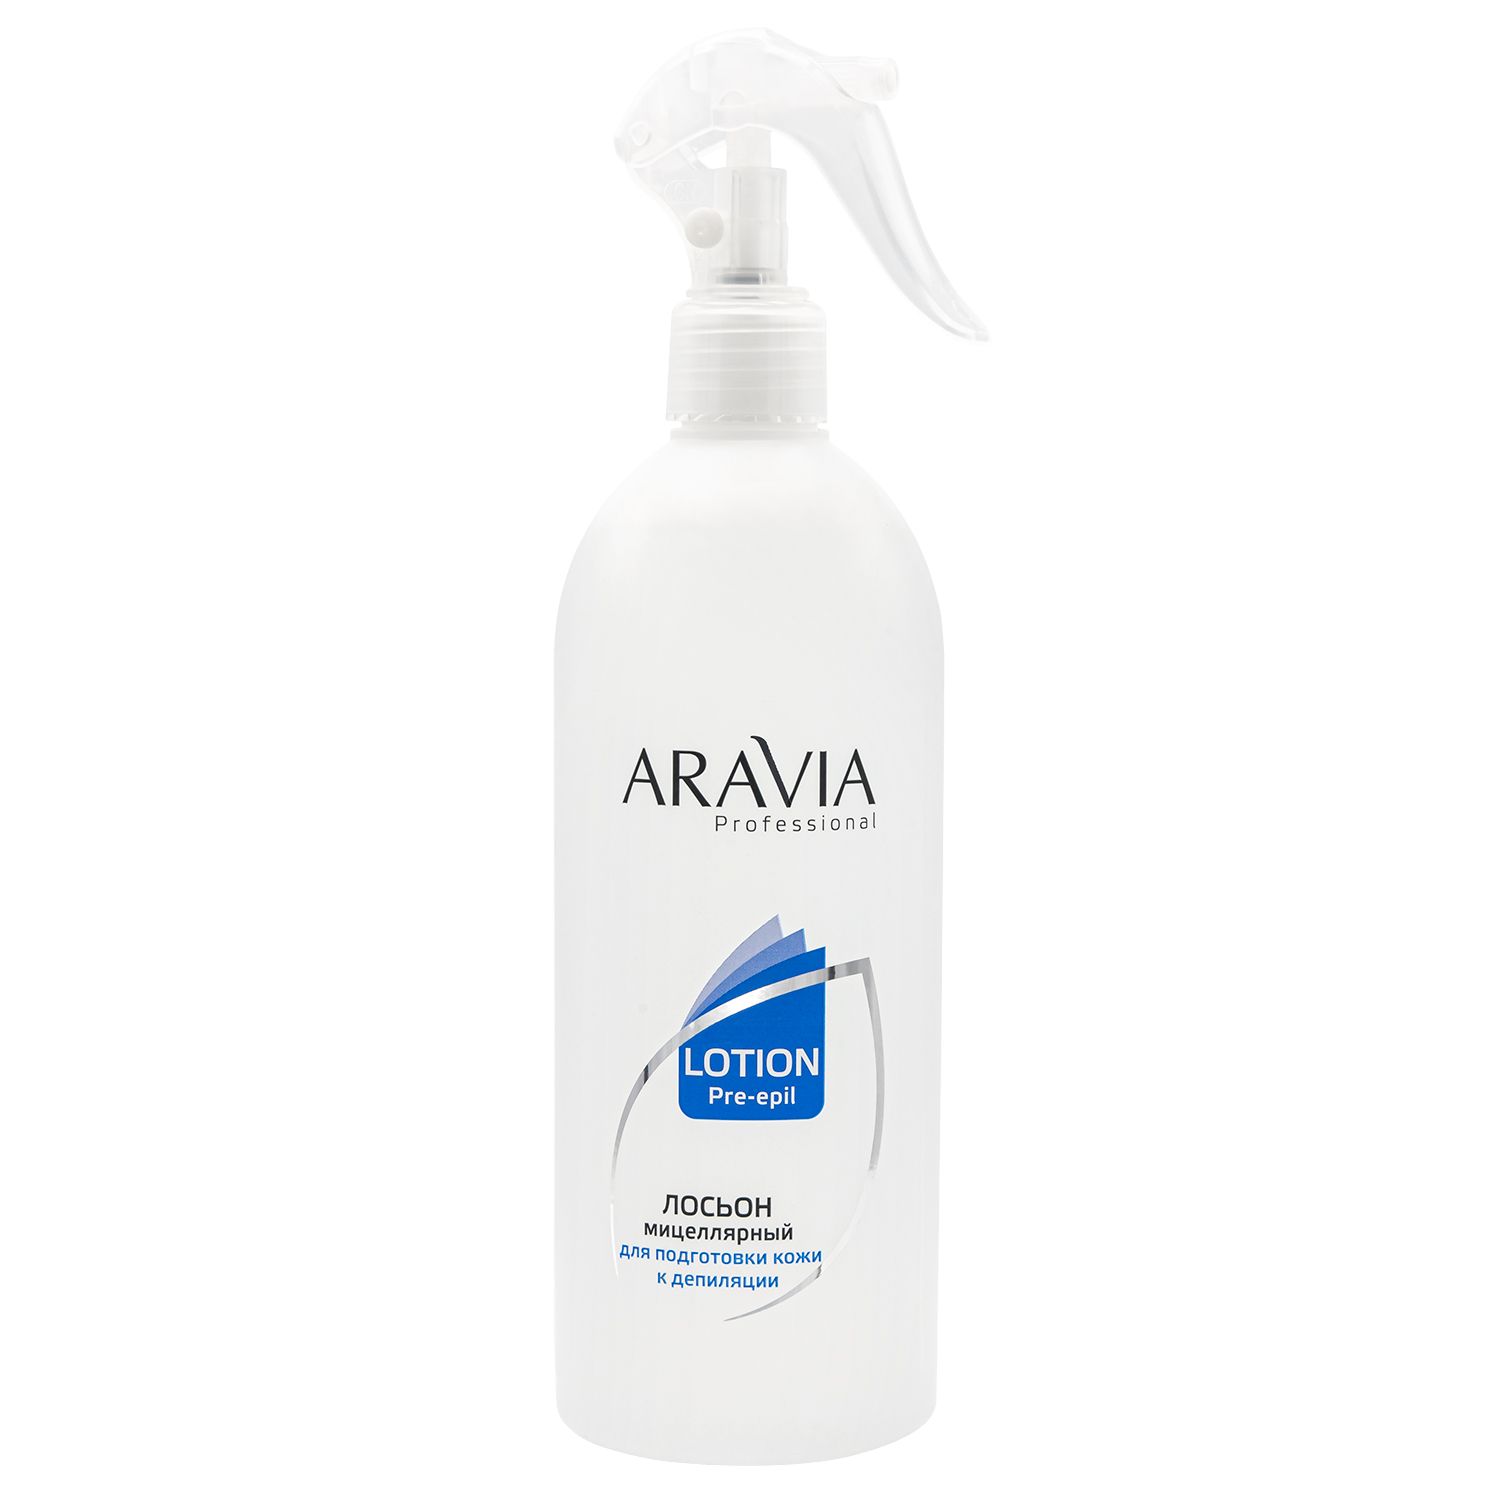 Aravia лосьон мицеллярный для подготовки кожи к депиляции 500мл (р)